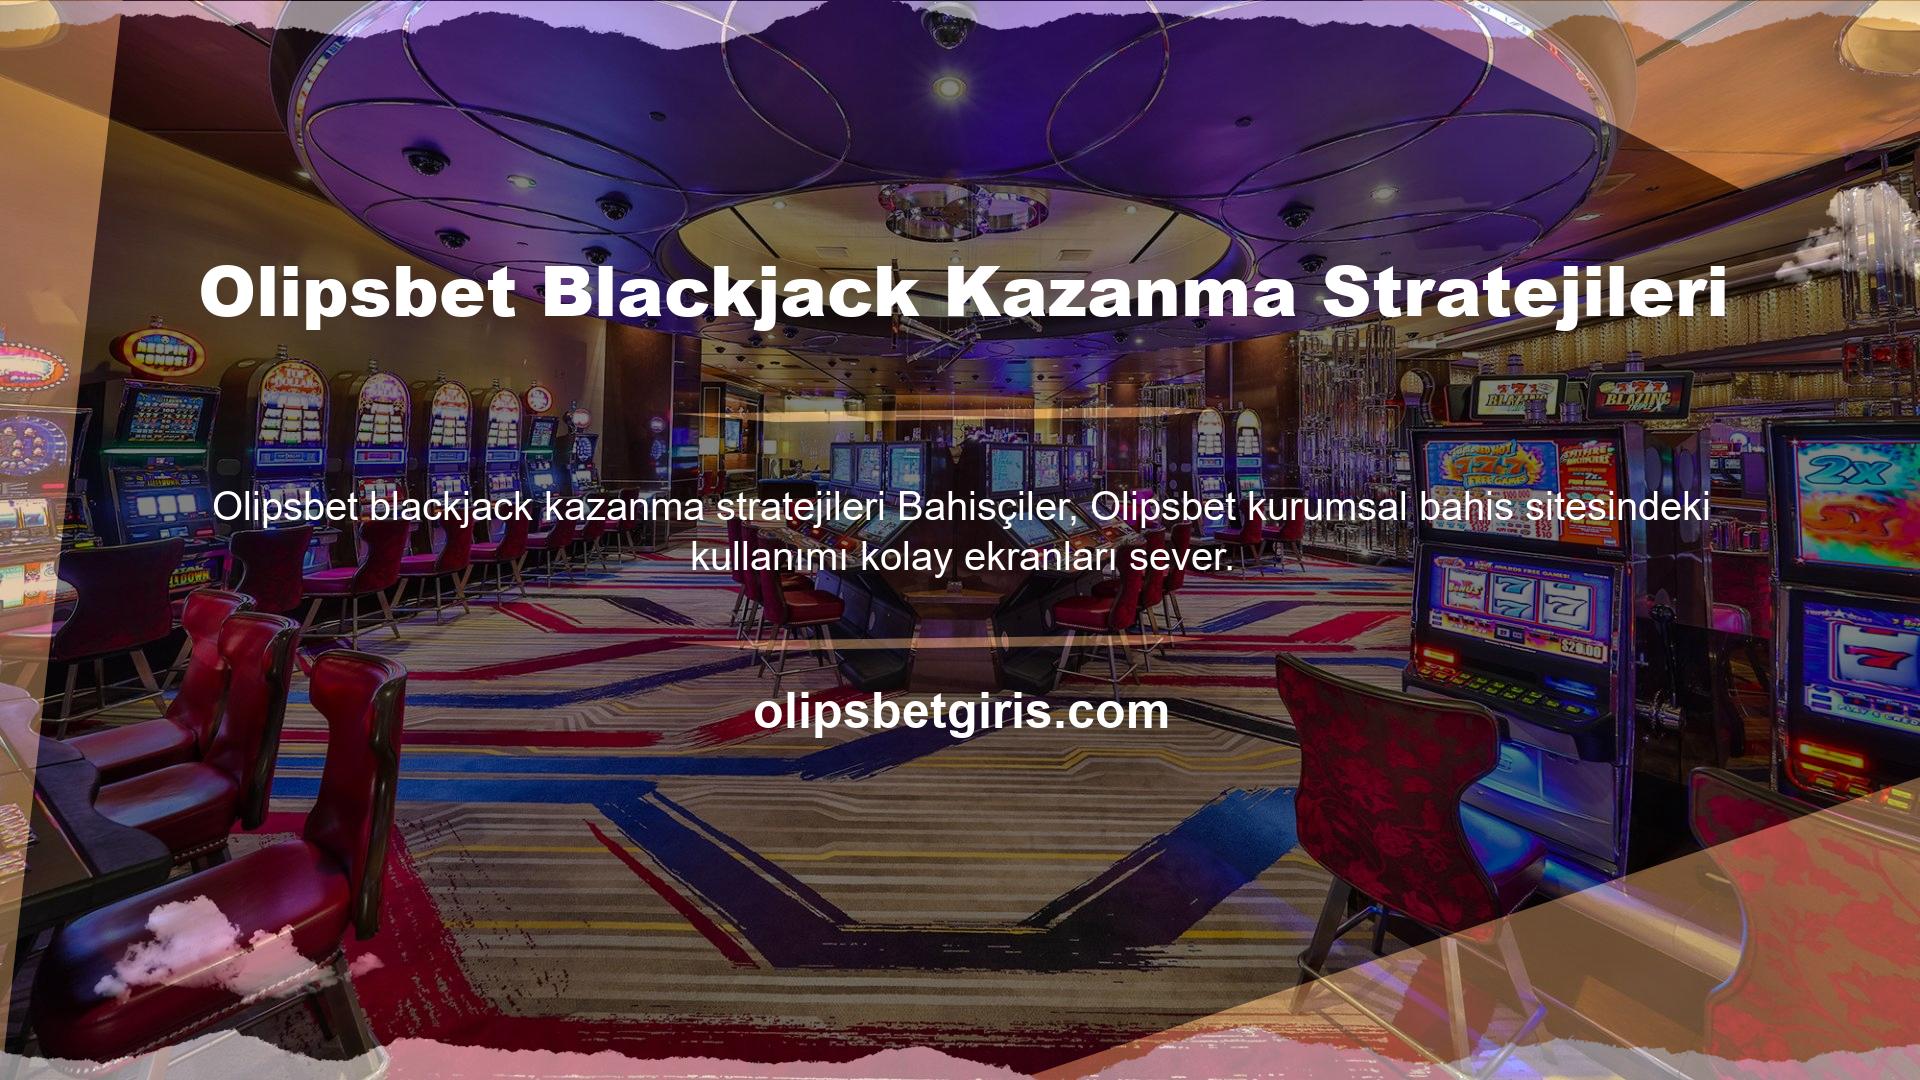 Olipsbet Blackjack Kazanma Stratejileri